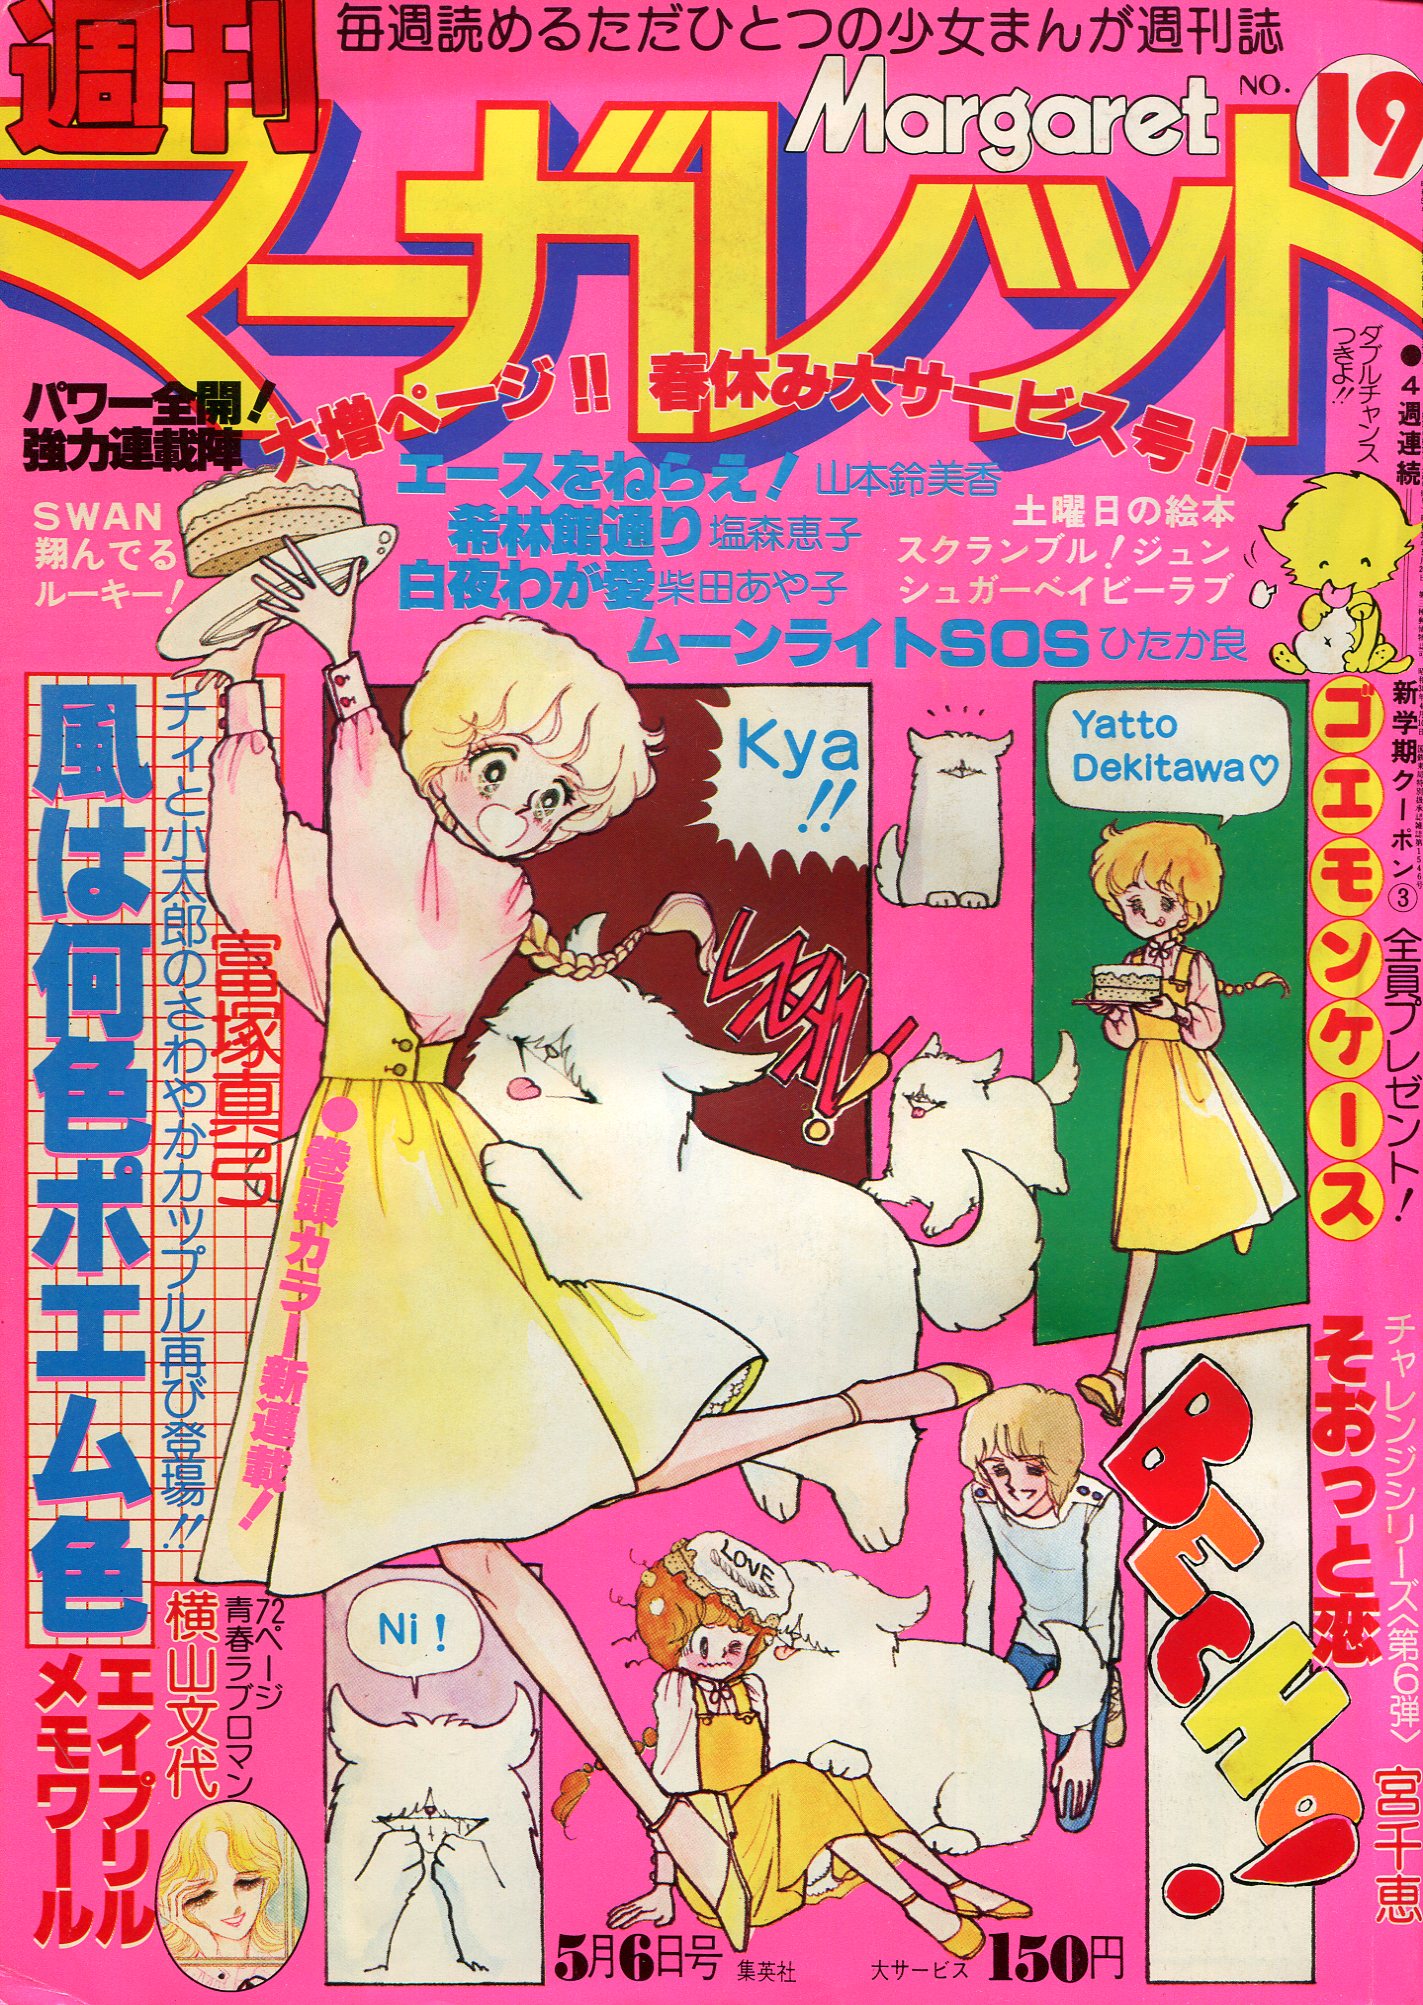 週刊マーガレット 1978年 1 4号※手紙をください 新連載 西谷祥子 - 漫画